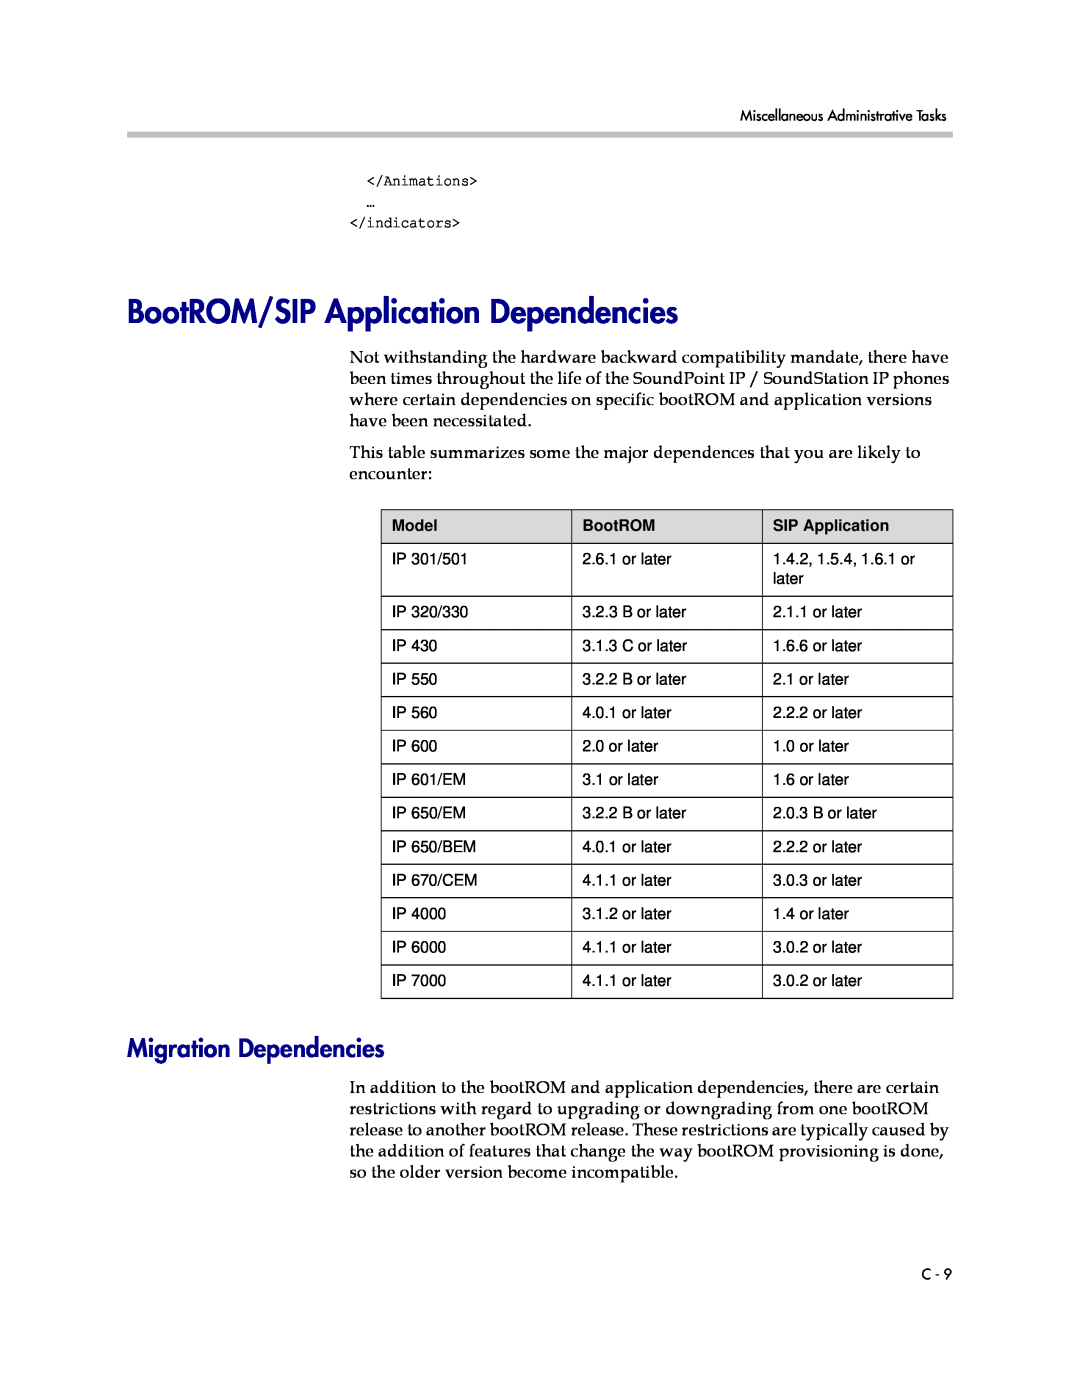 Polycom SIP 3.1 manual BootROM/SIP Application Dependencies, Migration Dependencies 